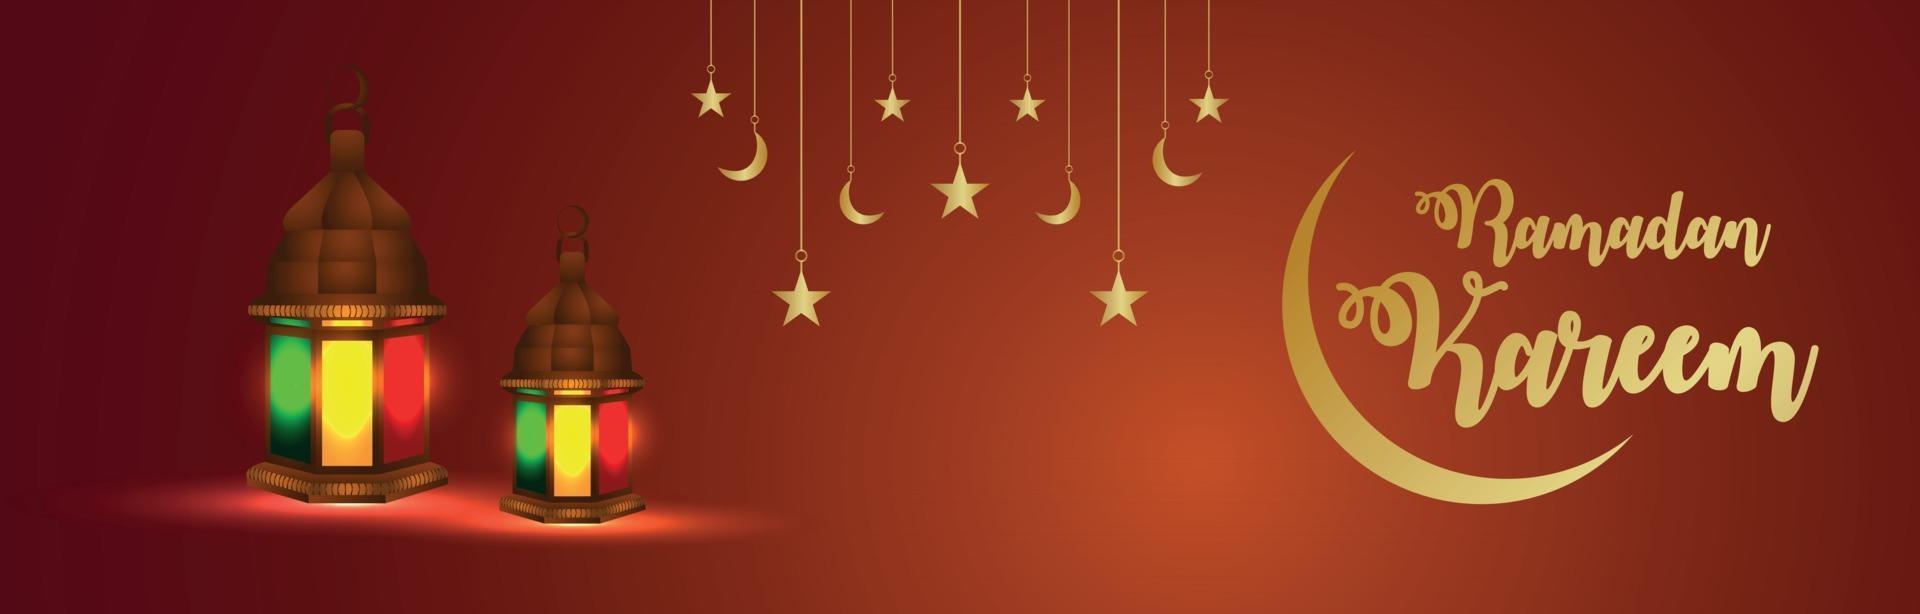 islamitische festival ramadan kareem uitnodigingsbanner met gouden tekst vector